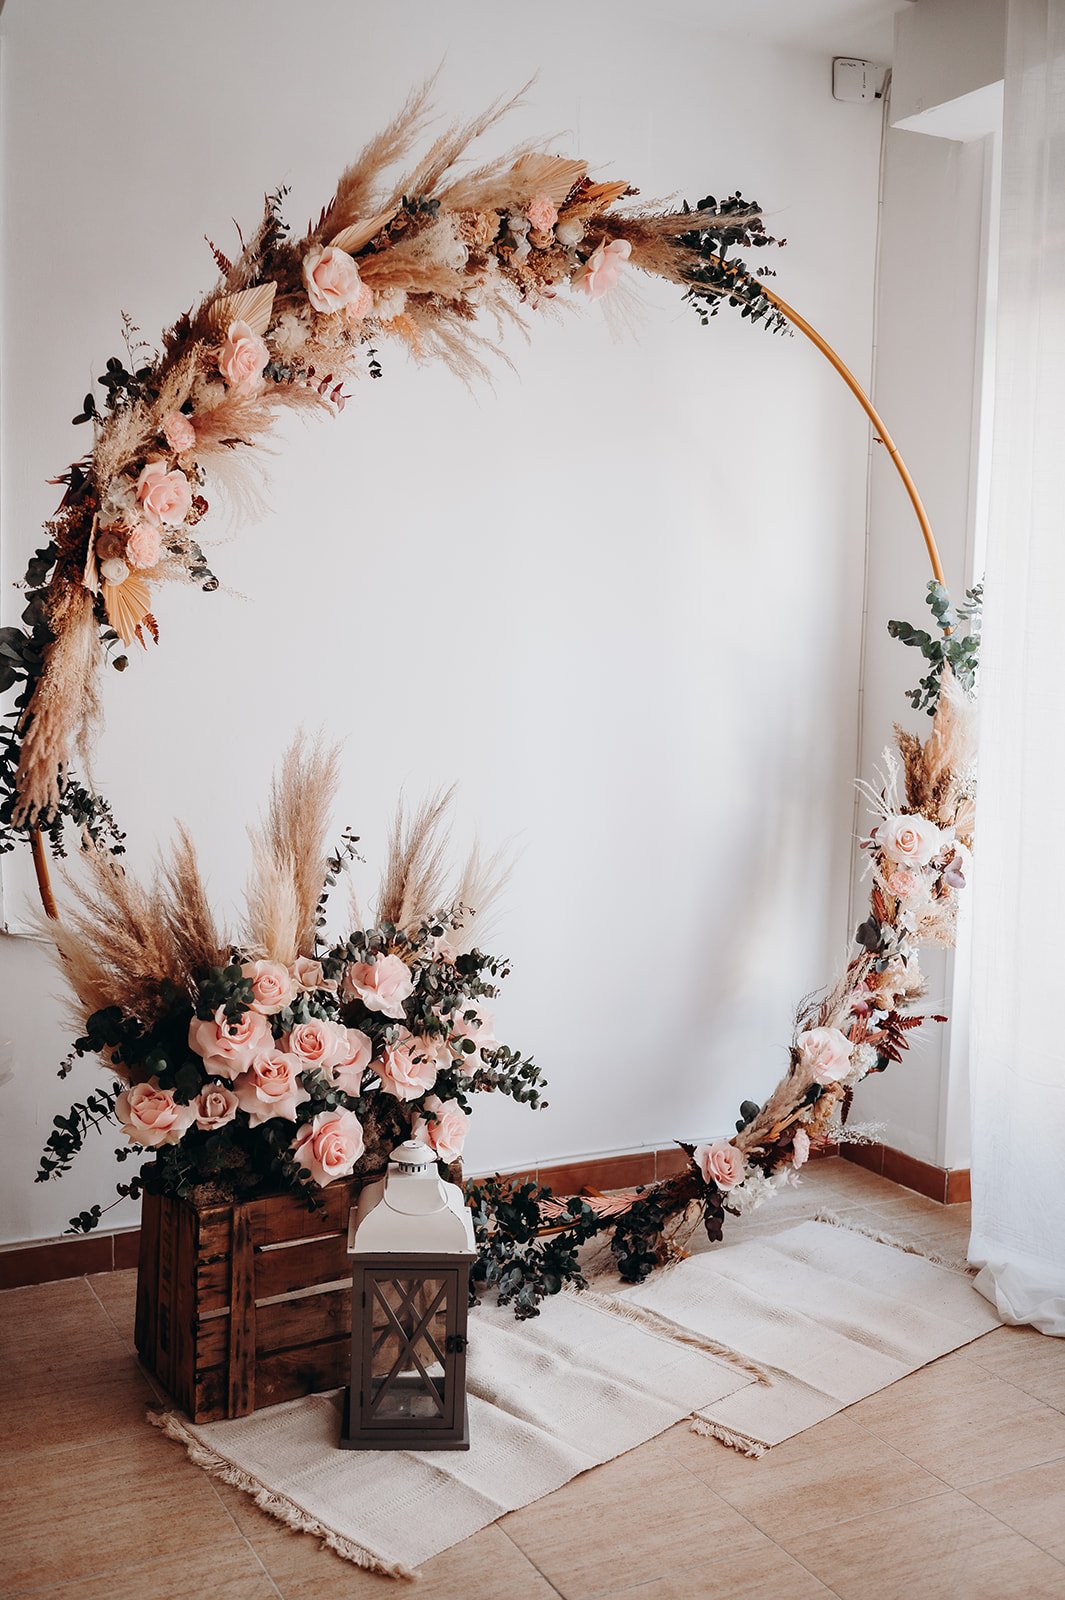 Tipos de decoración con flores para bodas